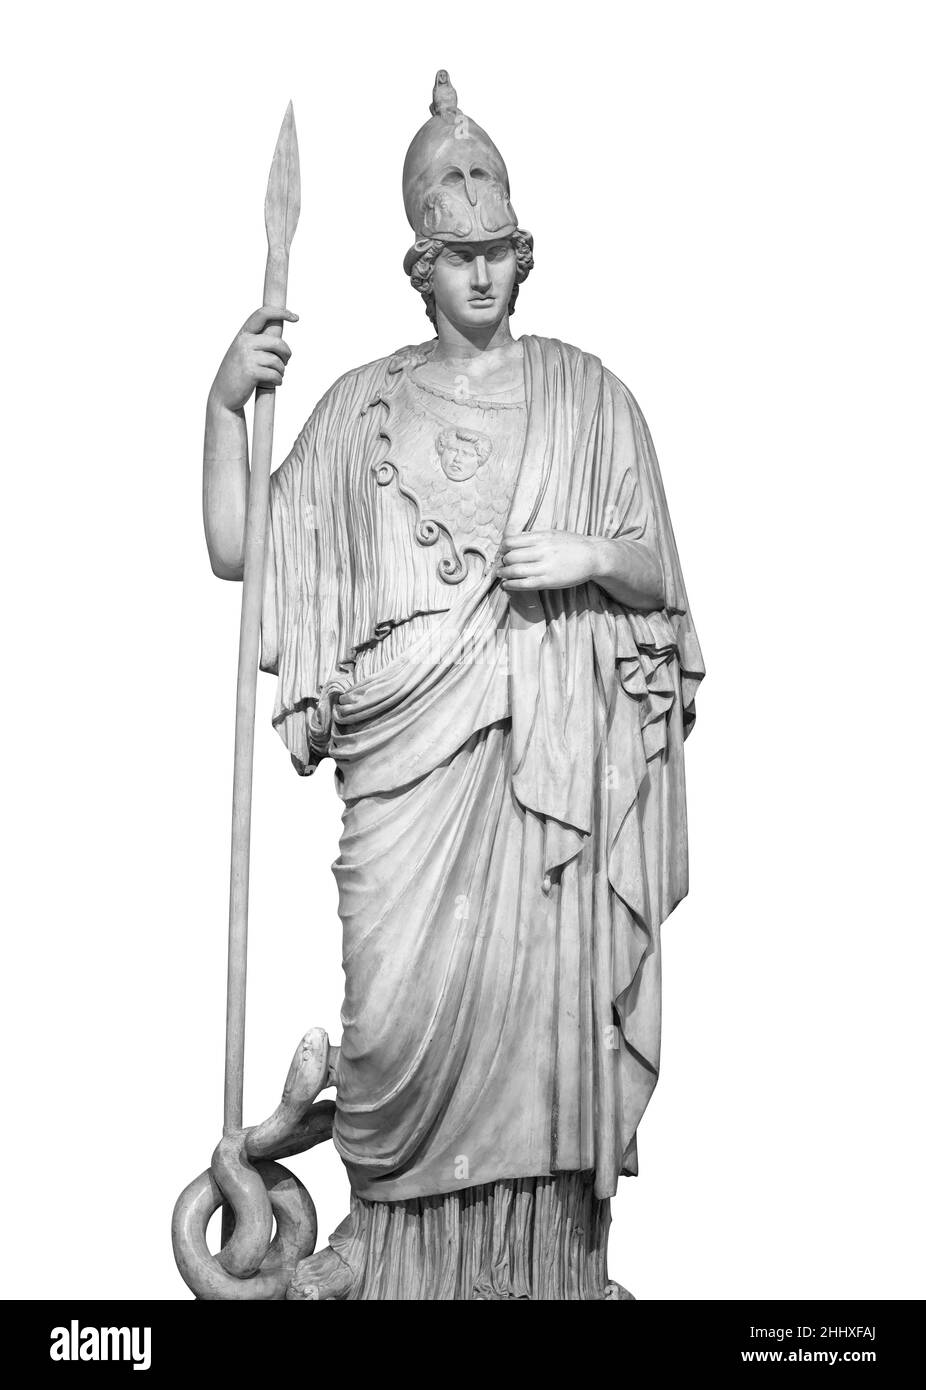 Ancienne statue grecque romaine de la déesse Athéna dieu de la sagesse et des arts sculpture historique isolée sur blanc avec le chemin de coupure Banque D'Images